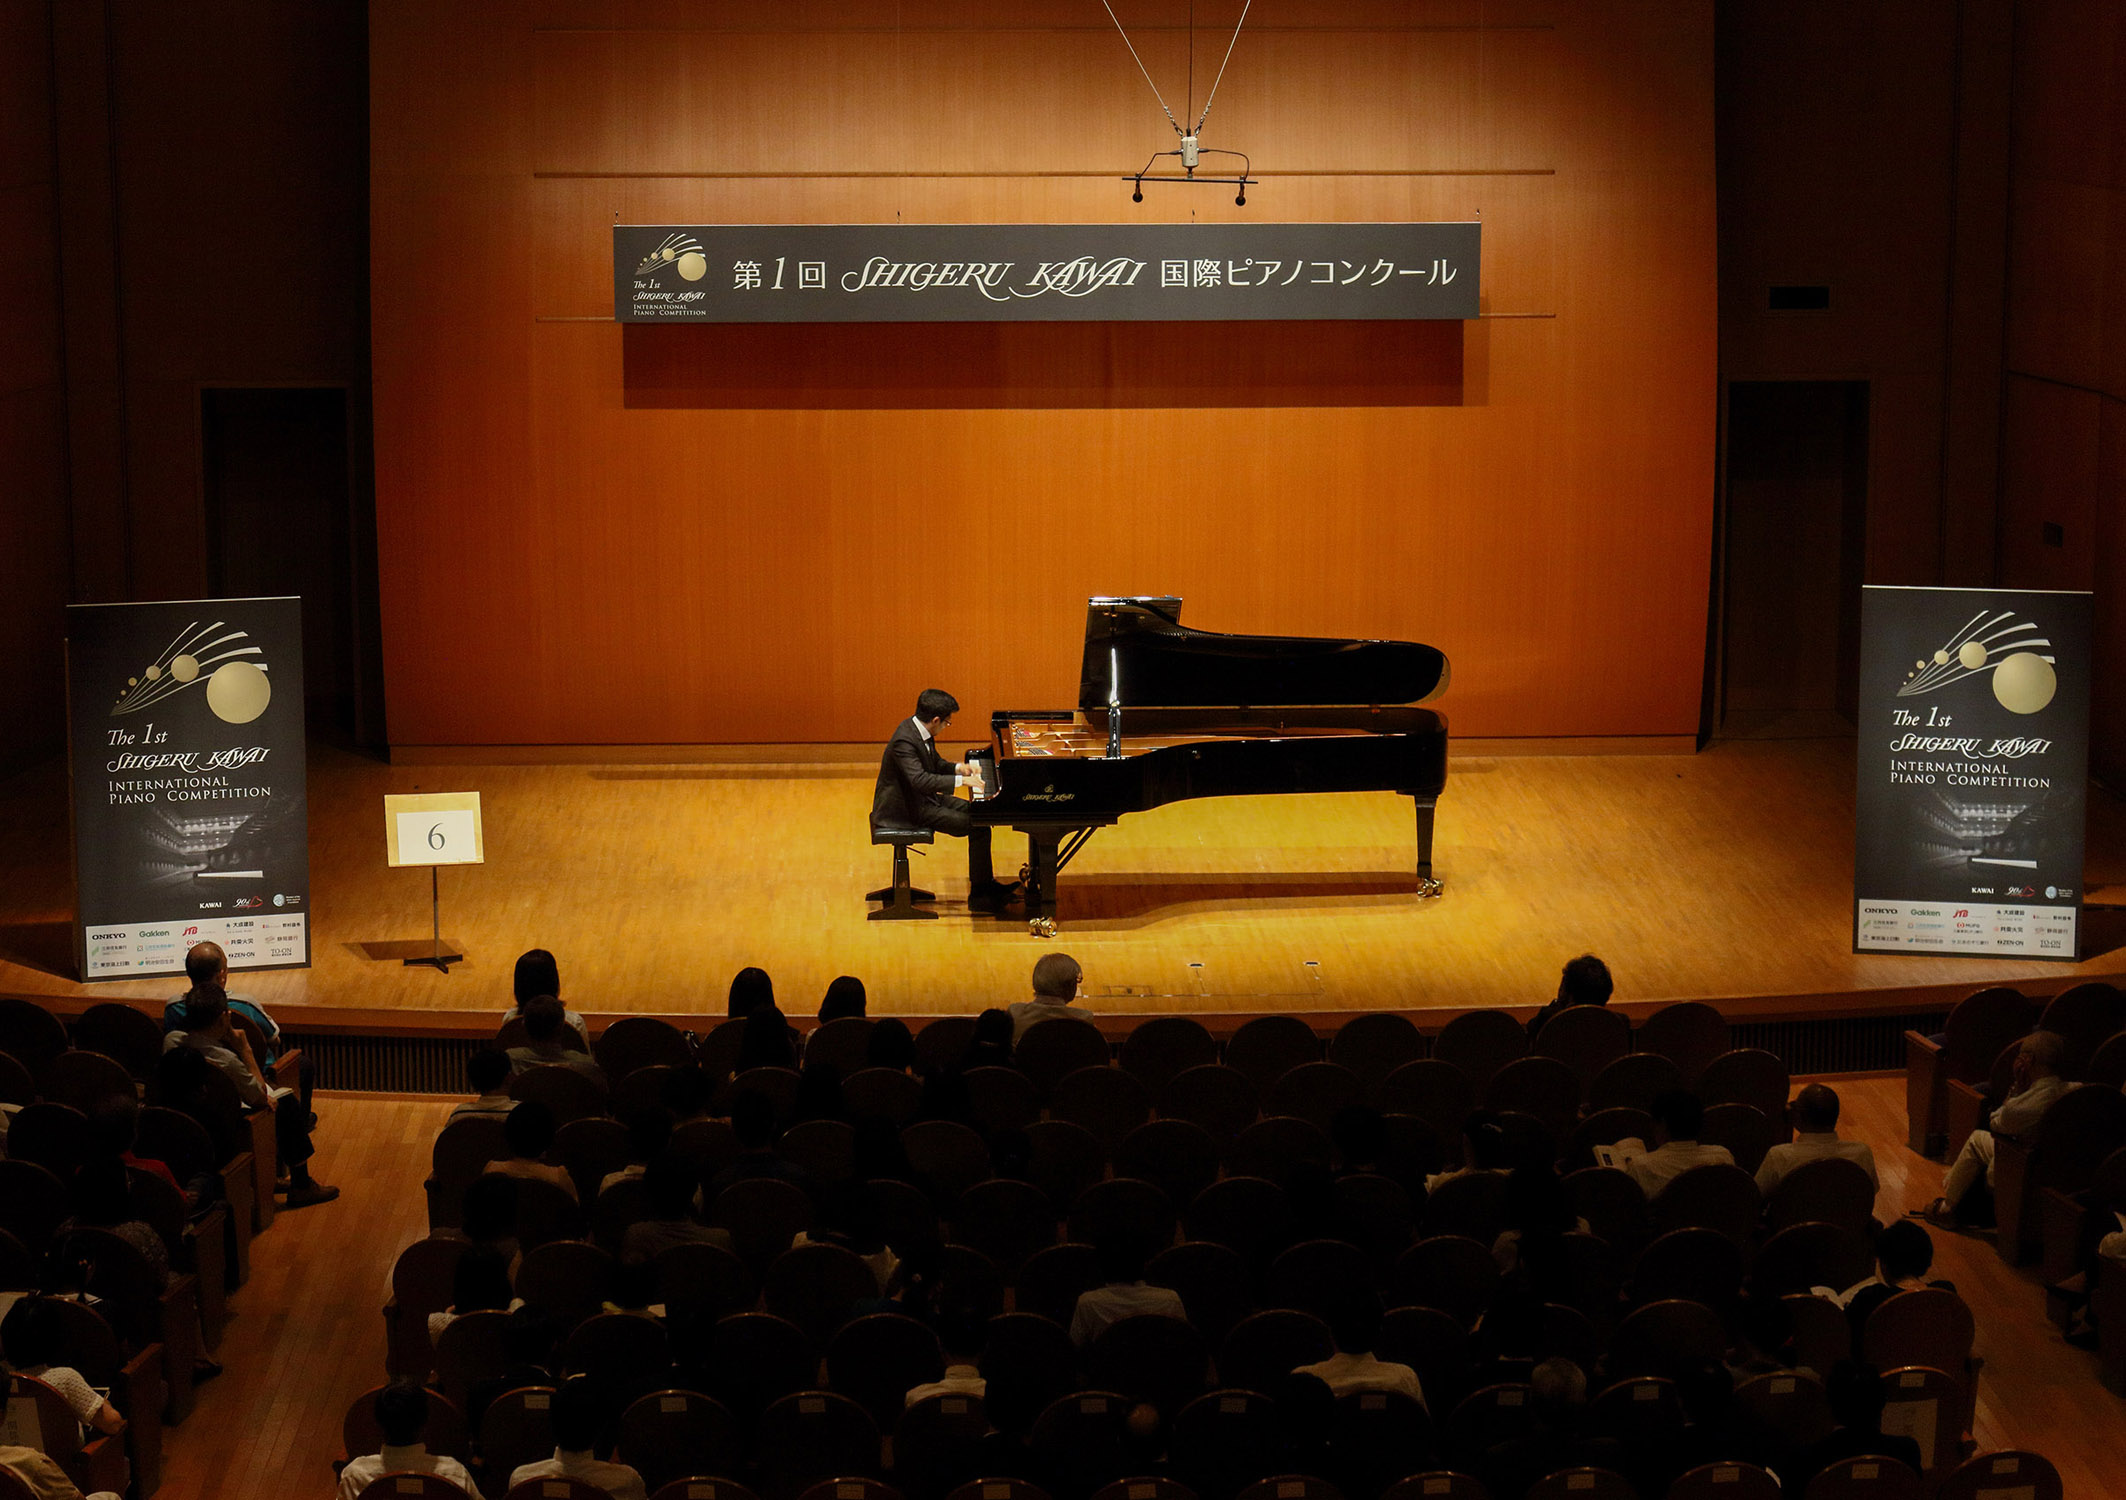 第1回Shgeru Kawai 国際ピアノコンクールの様子